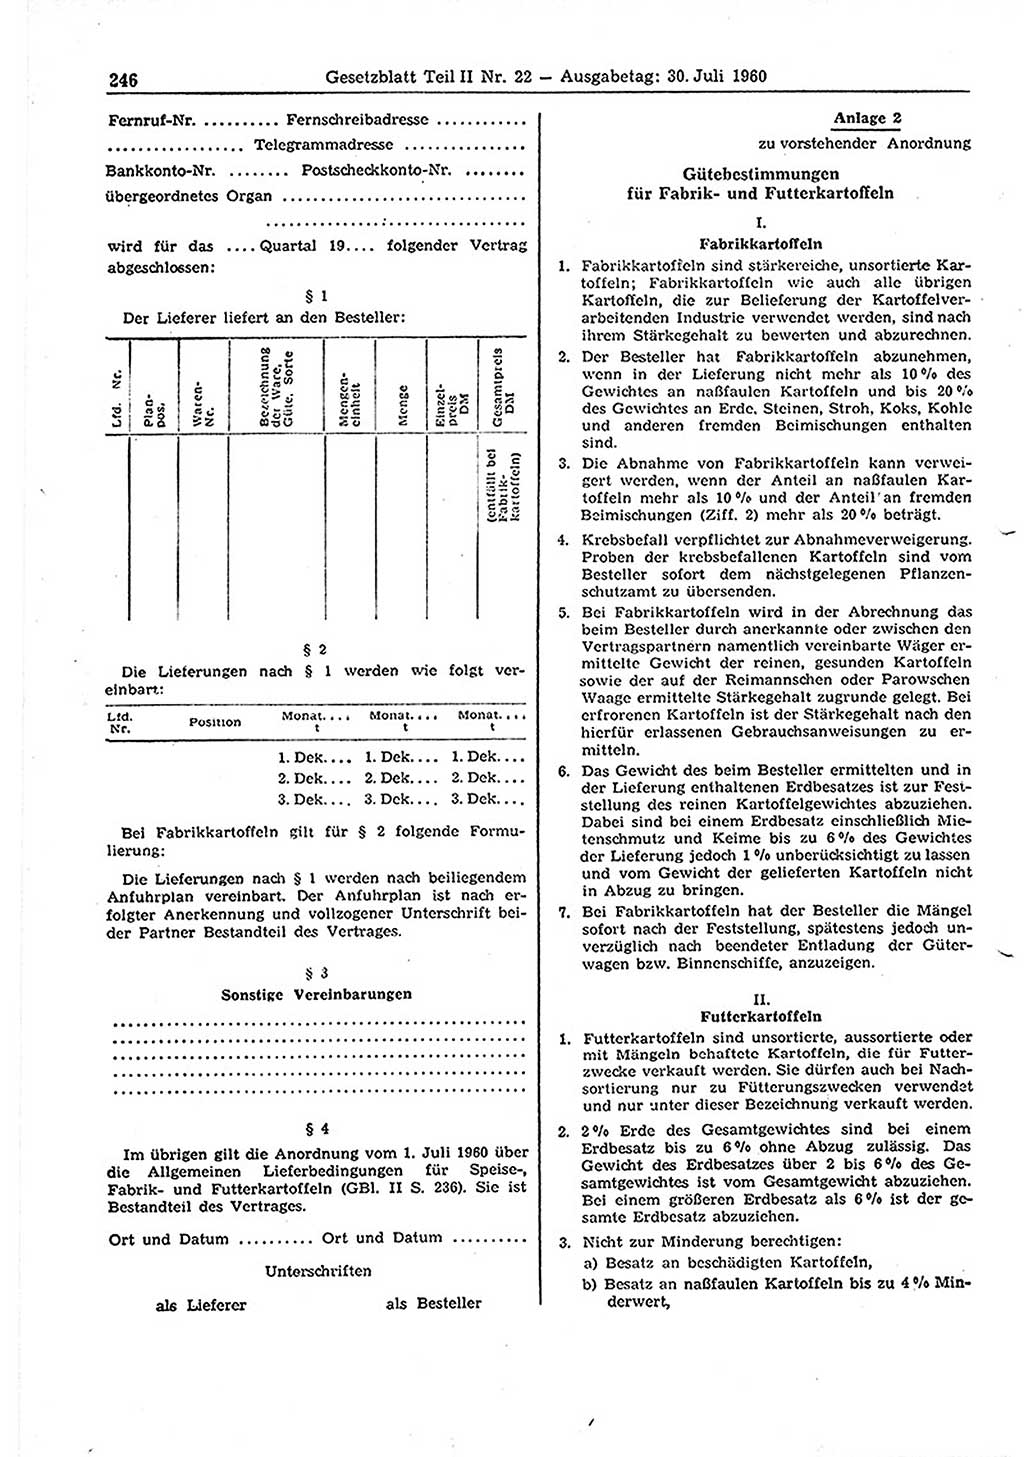 Gesetzblatt (GBl.) der Deutschen Demokratischen Republik (DDR) Teil ⅠⅠ 1960, Seite 246 (GBl. DDR ⅠⅠ 1960, S. 246)